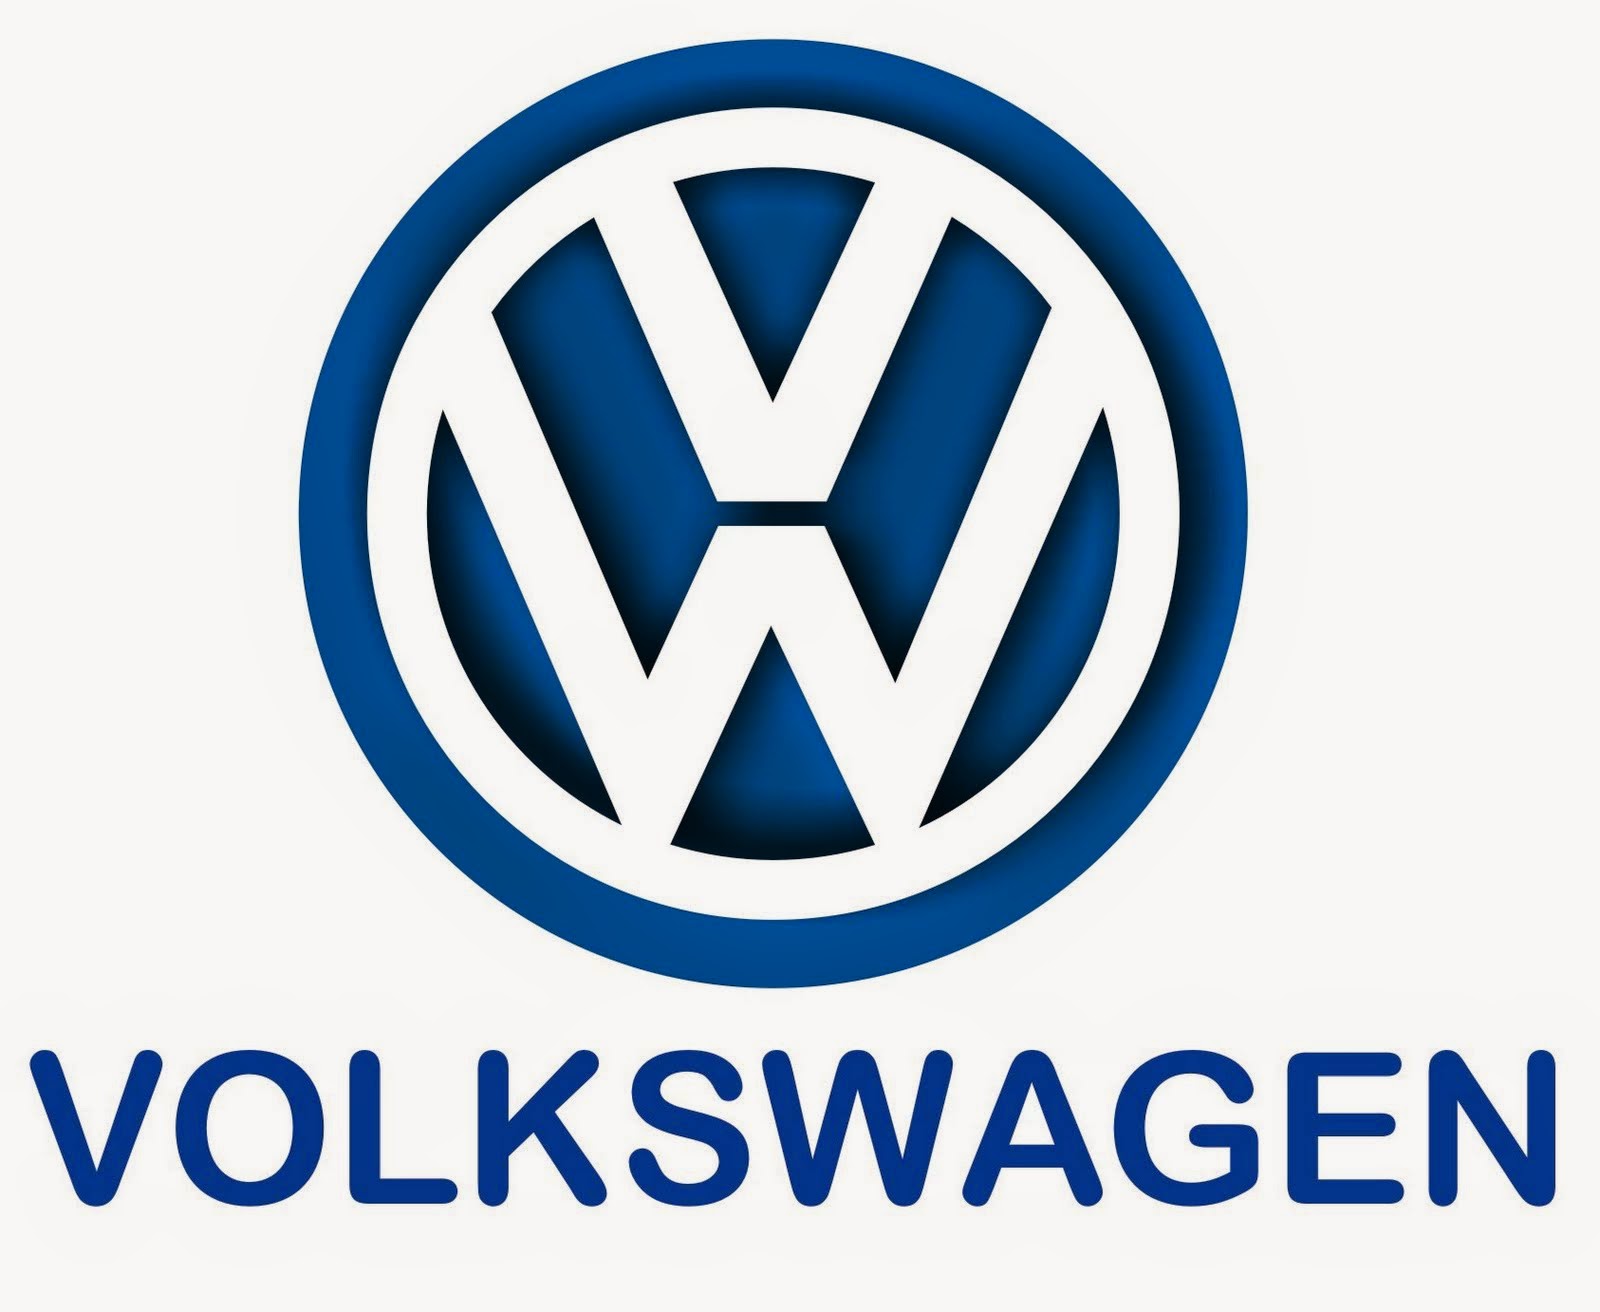 Daftar Harga Mobil Volkswagen Terbaru 2015 Kata Harga 2015